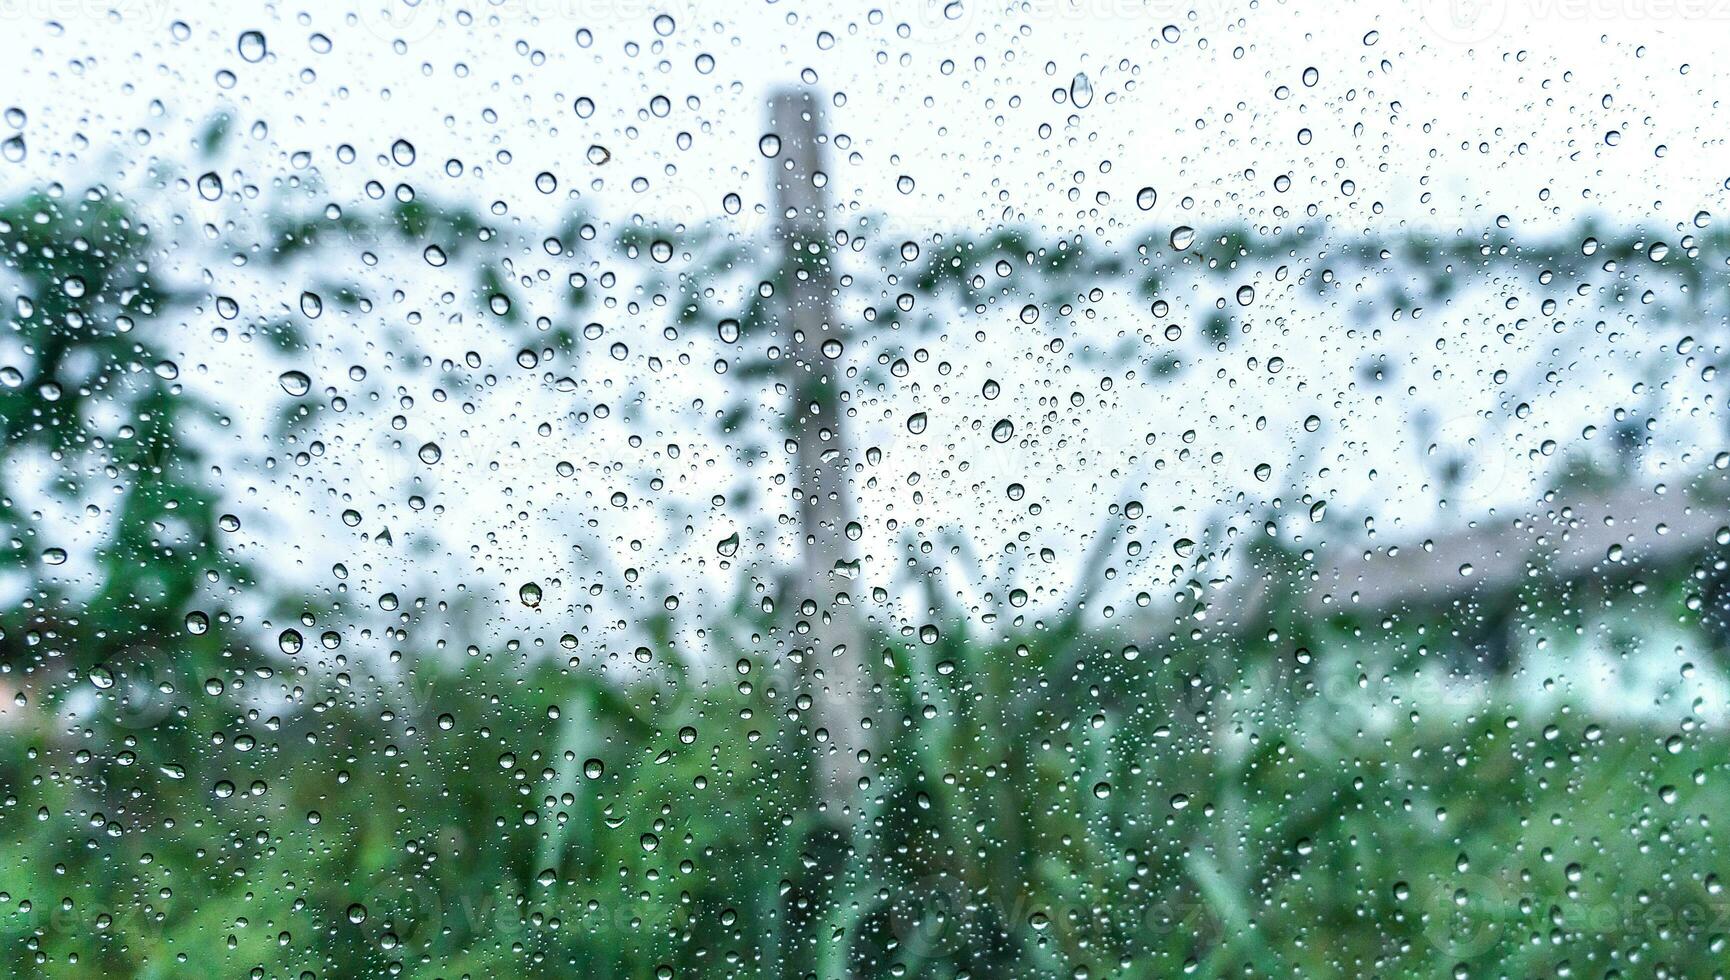 chuva gotas em superfície do carro vidro com borrado verde natureza fundo e flores através janela vidro do a carro coberto de pingos de chuva. frescor depois de chuva. molhado pára-brisas tiro a partir de dentro carro. foto